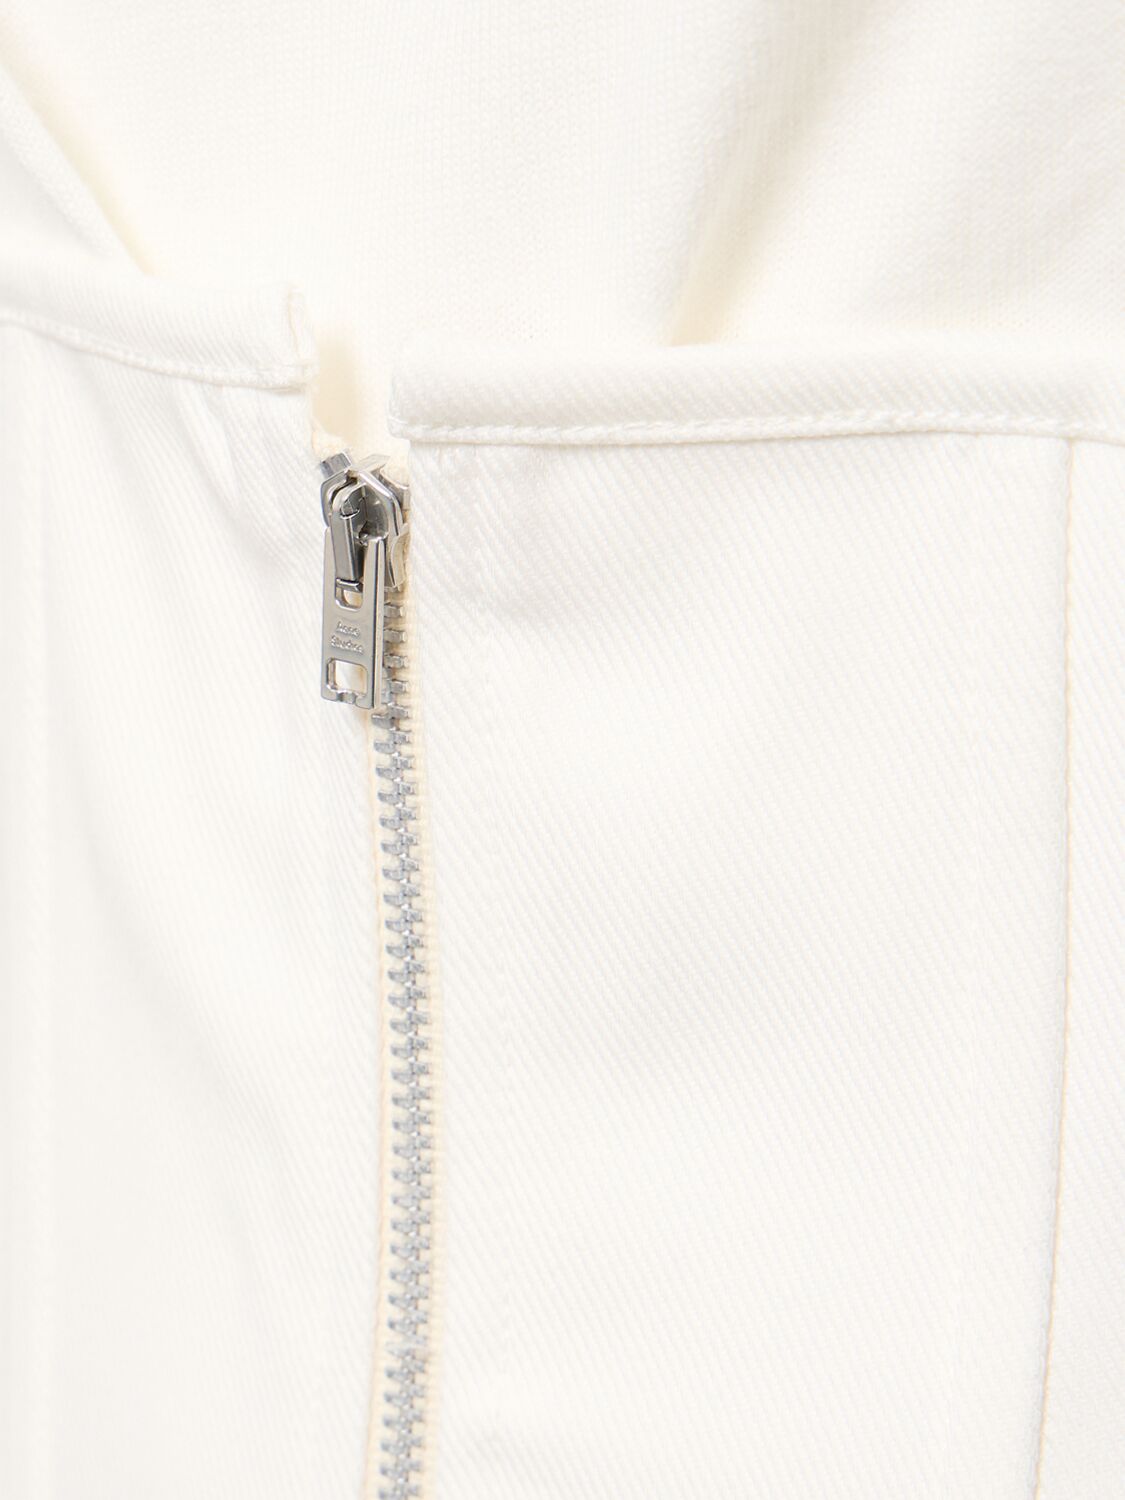 Shop Acne Studios Asymmetric Cotton Blend Dress W/ Corset In White